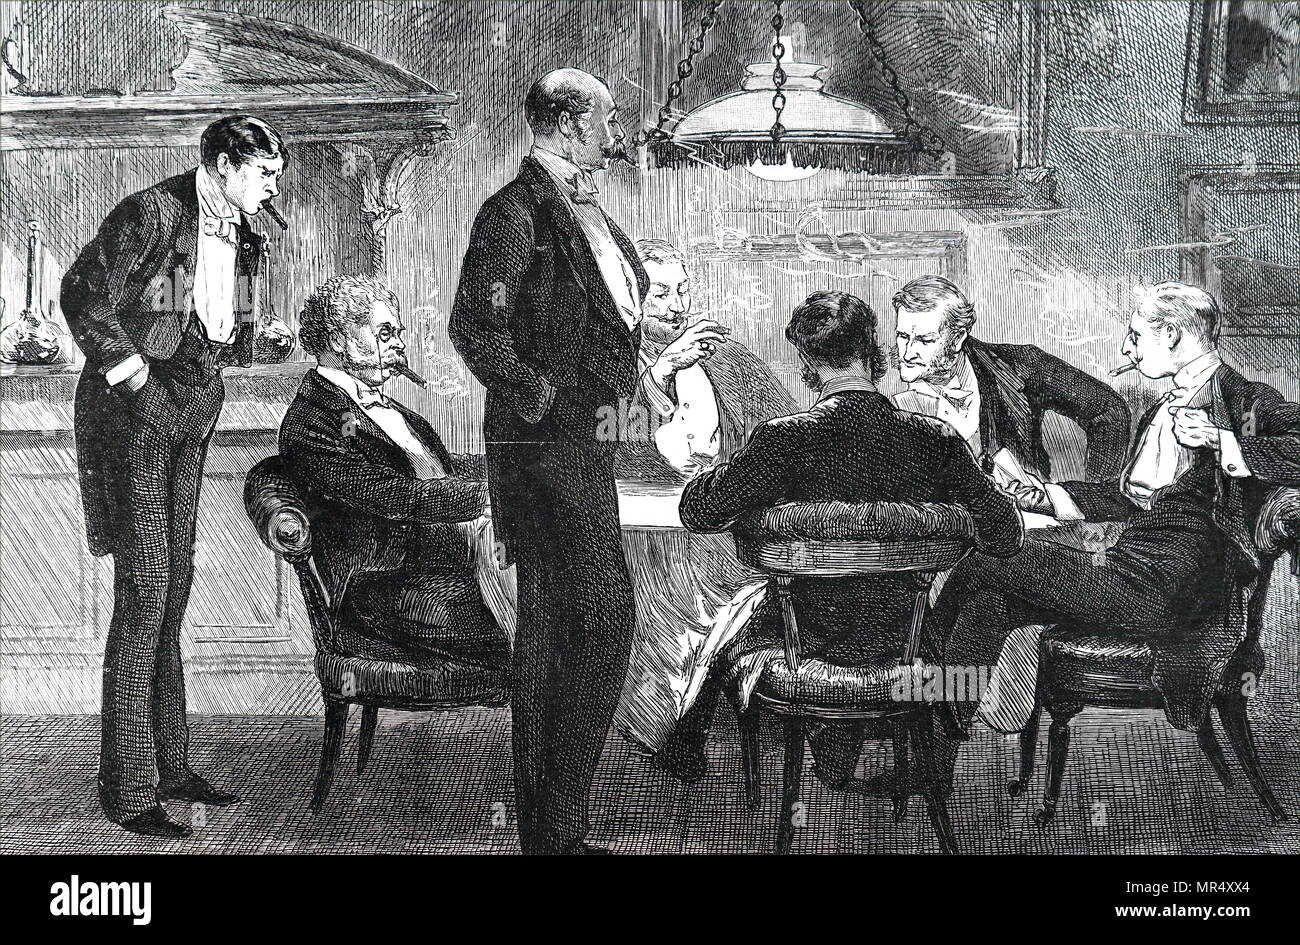 Illustrazione raffigurante colleghi presso la scheda tabella fumatori di sigari. Datata del XIX secolo Foto Stock